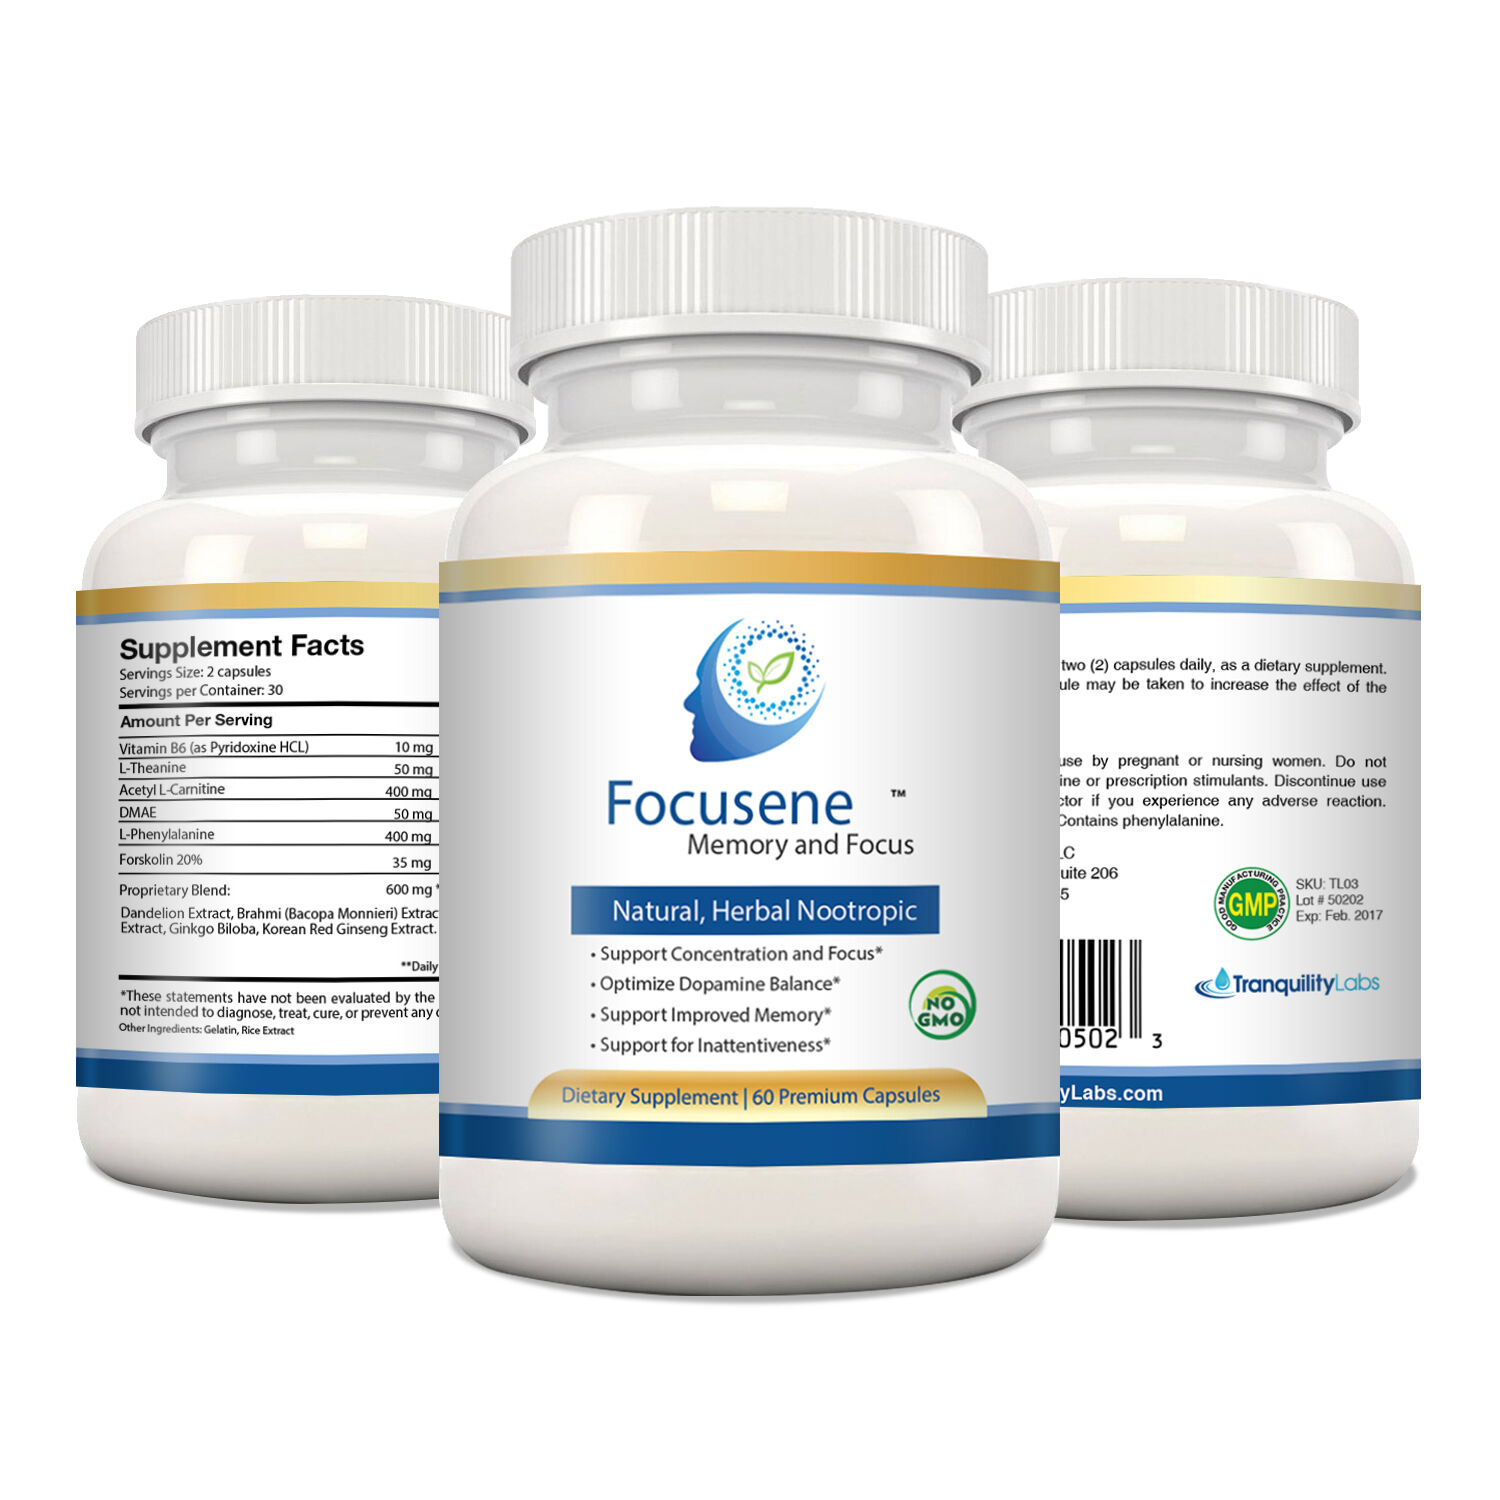  Focusene - Natural, Herbal Nootropic - Focus, Memory, Concentration (180 caps)